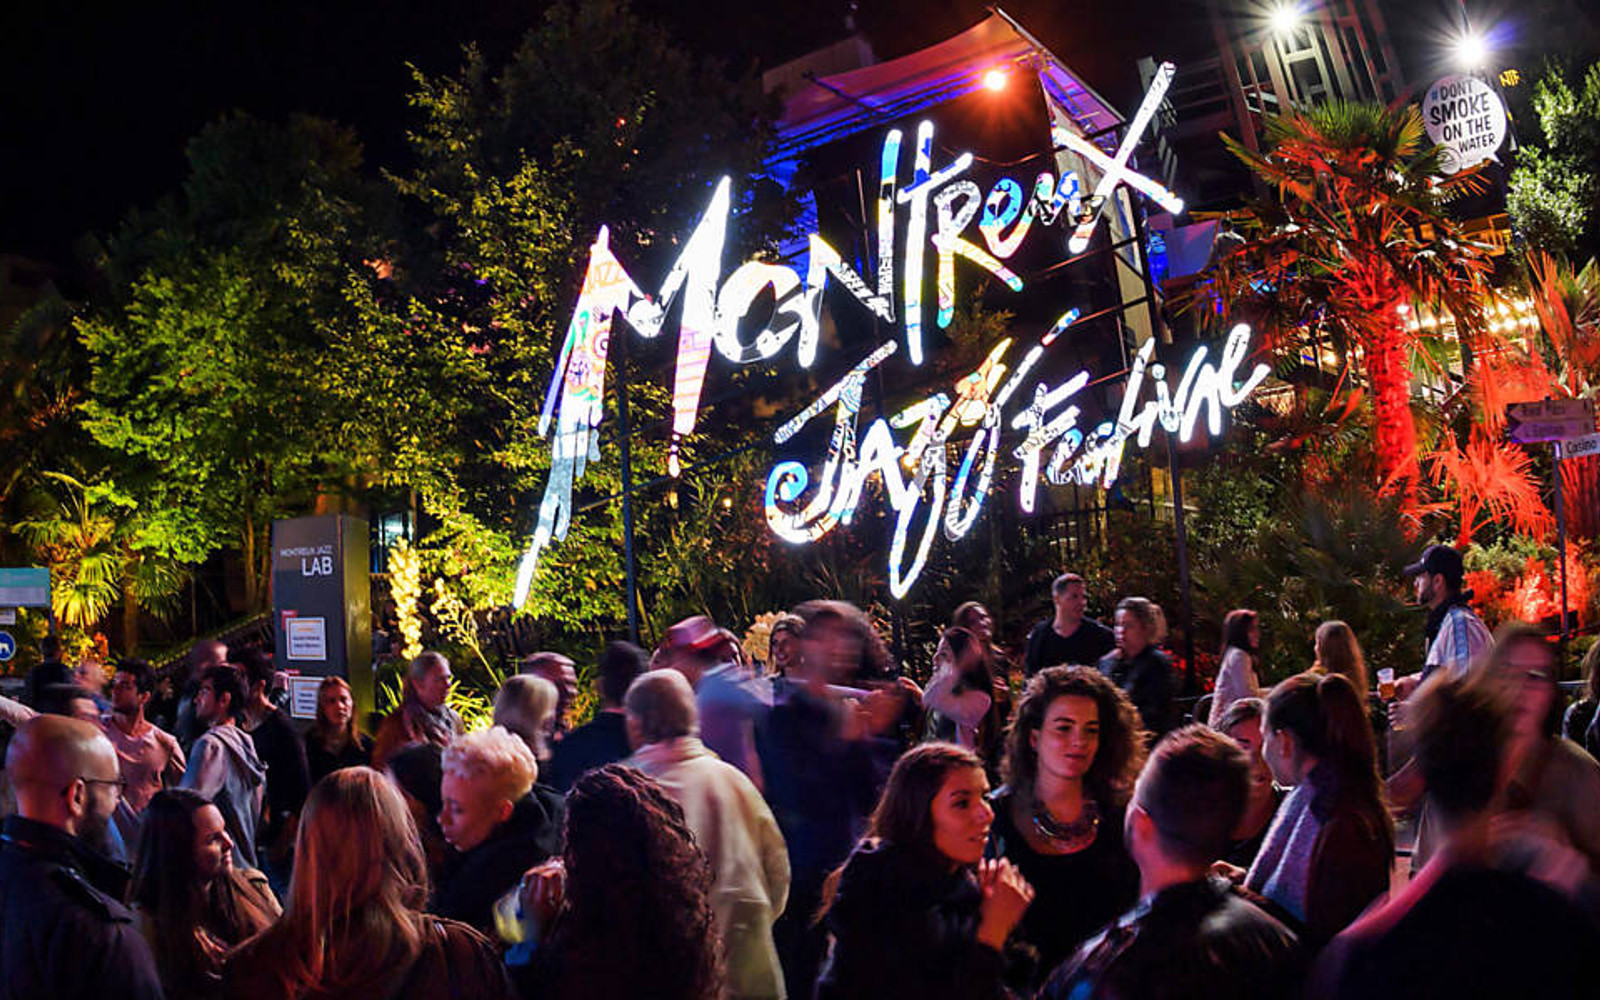 Com vídeos especiais e lineup incrível, Montreux Jazz Festival chega a sua 52ª edição